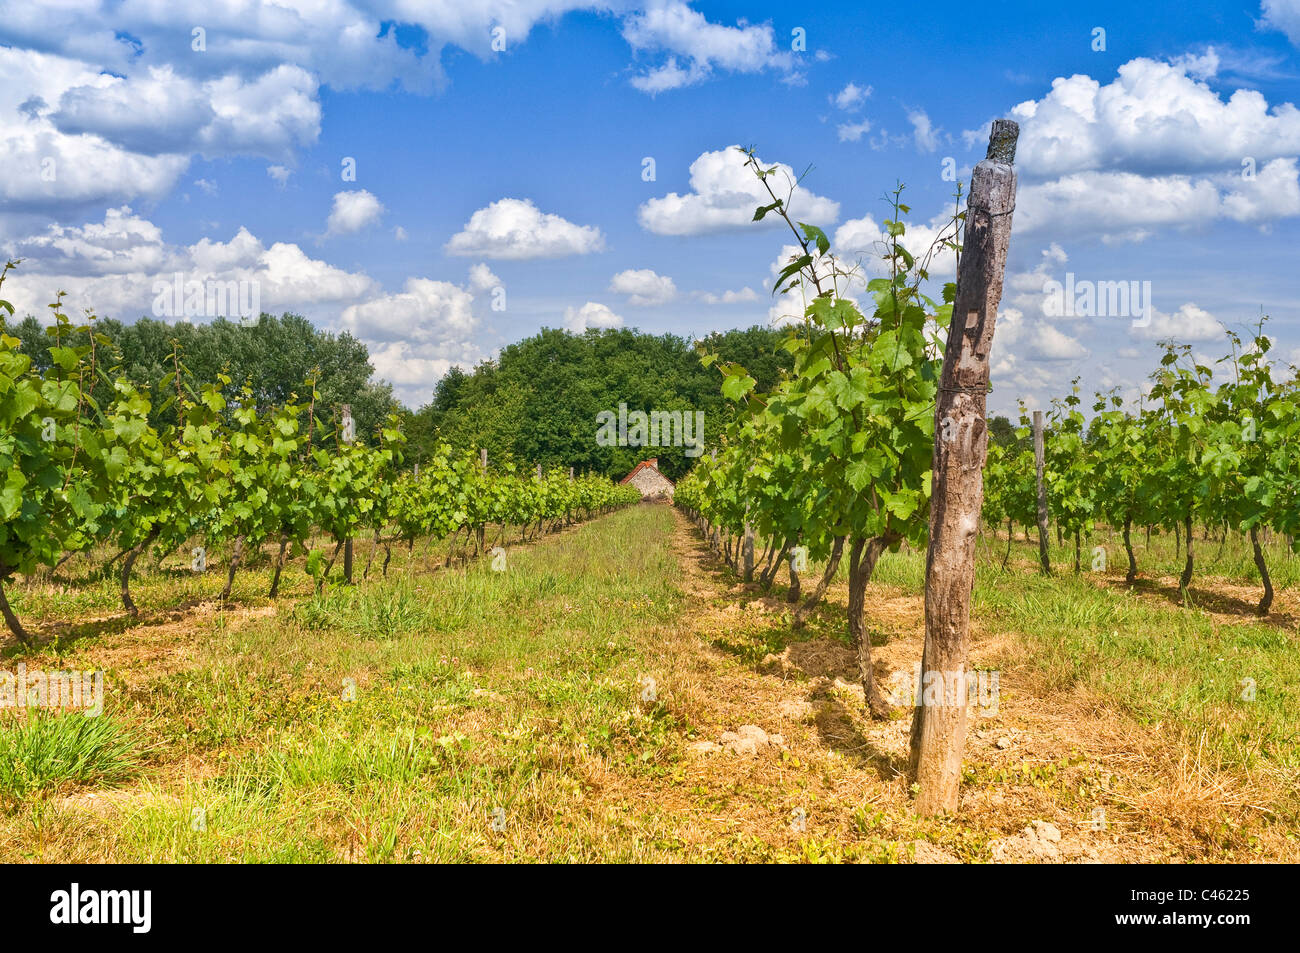 La croissance précoce des feuilles de vignes - Indre-et-Loire, France. Banque D'Images